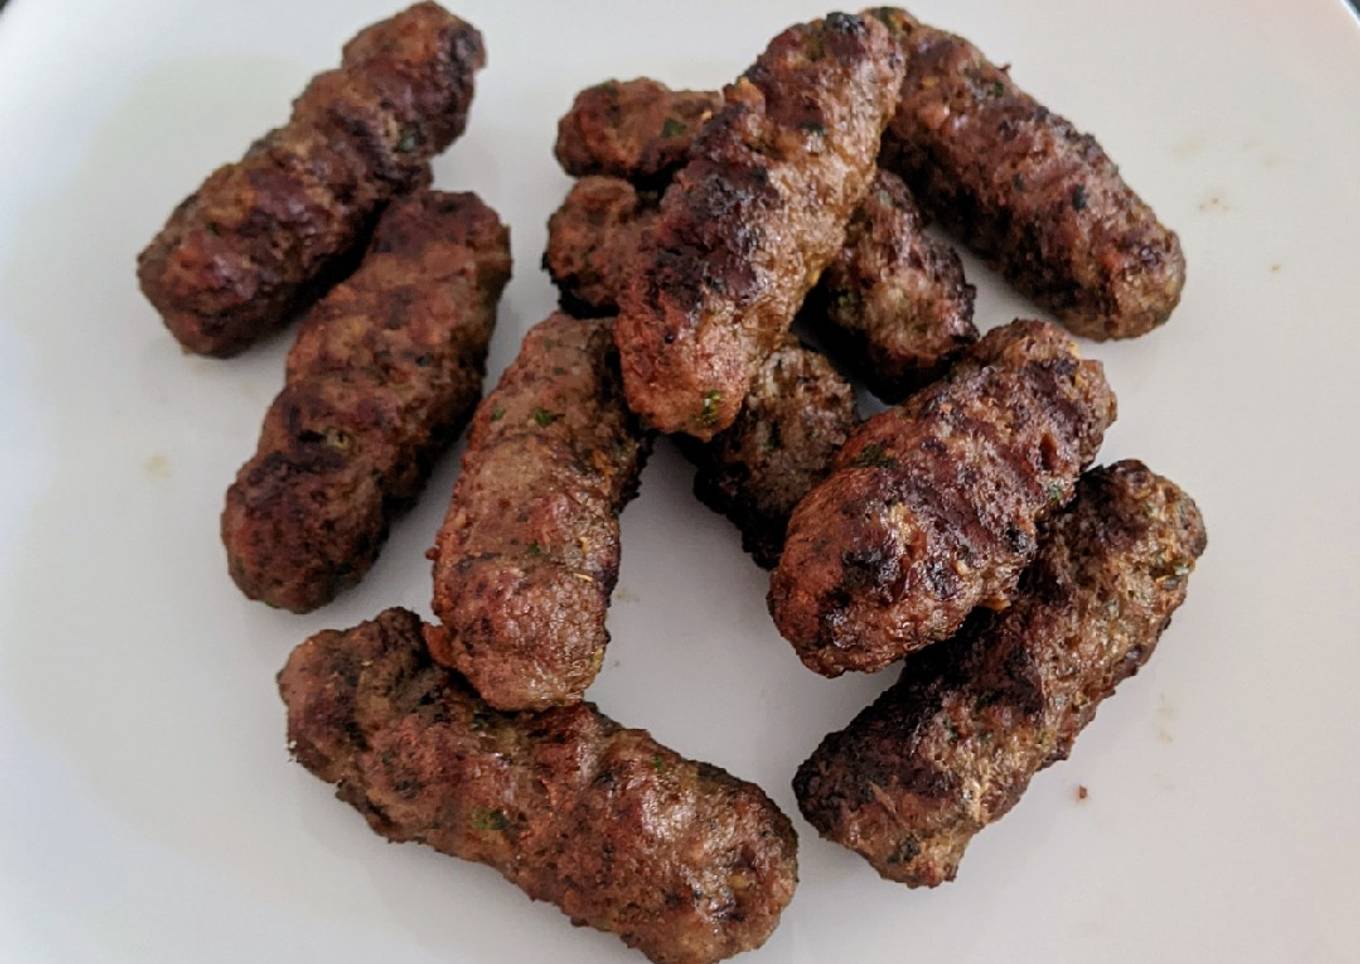 Ćevapčići (small grilled kebabs)